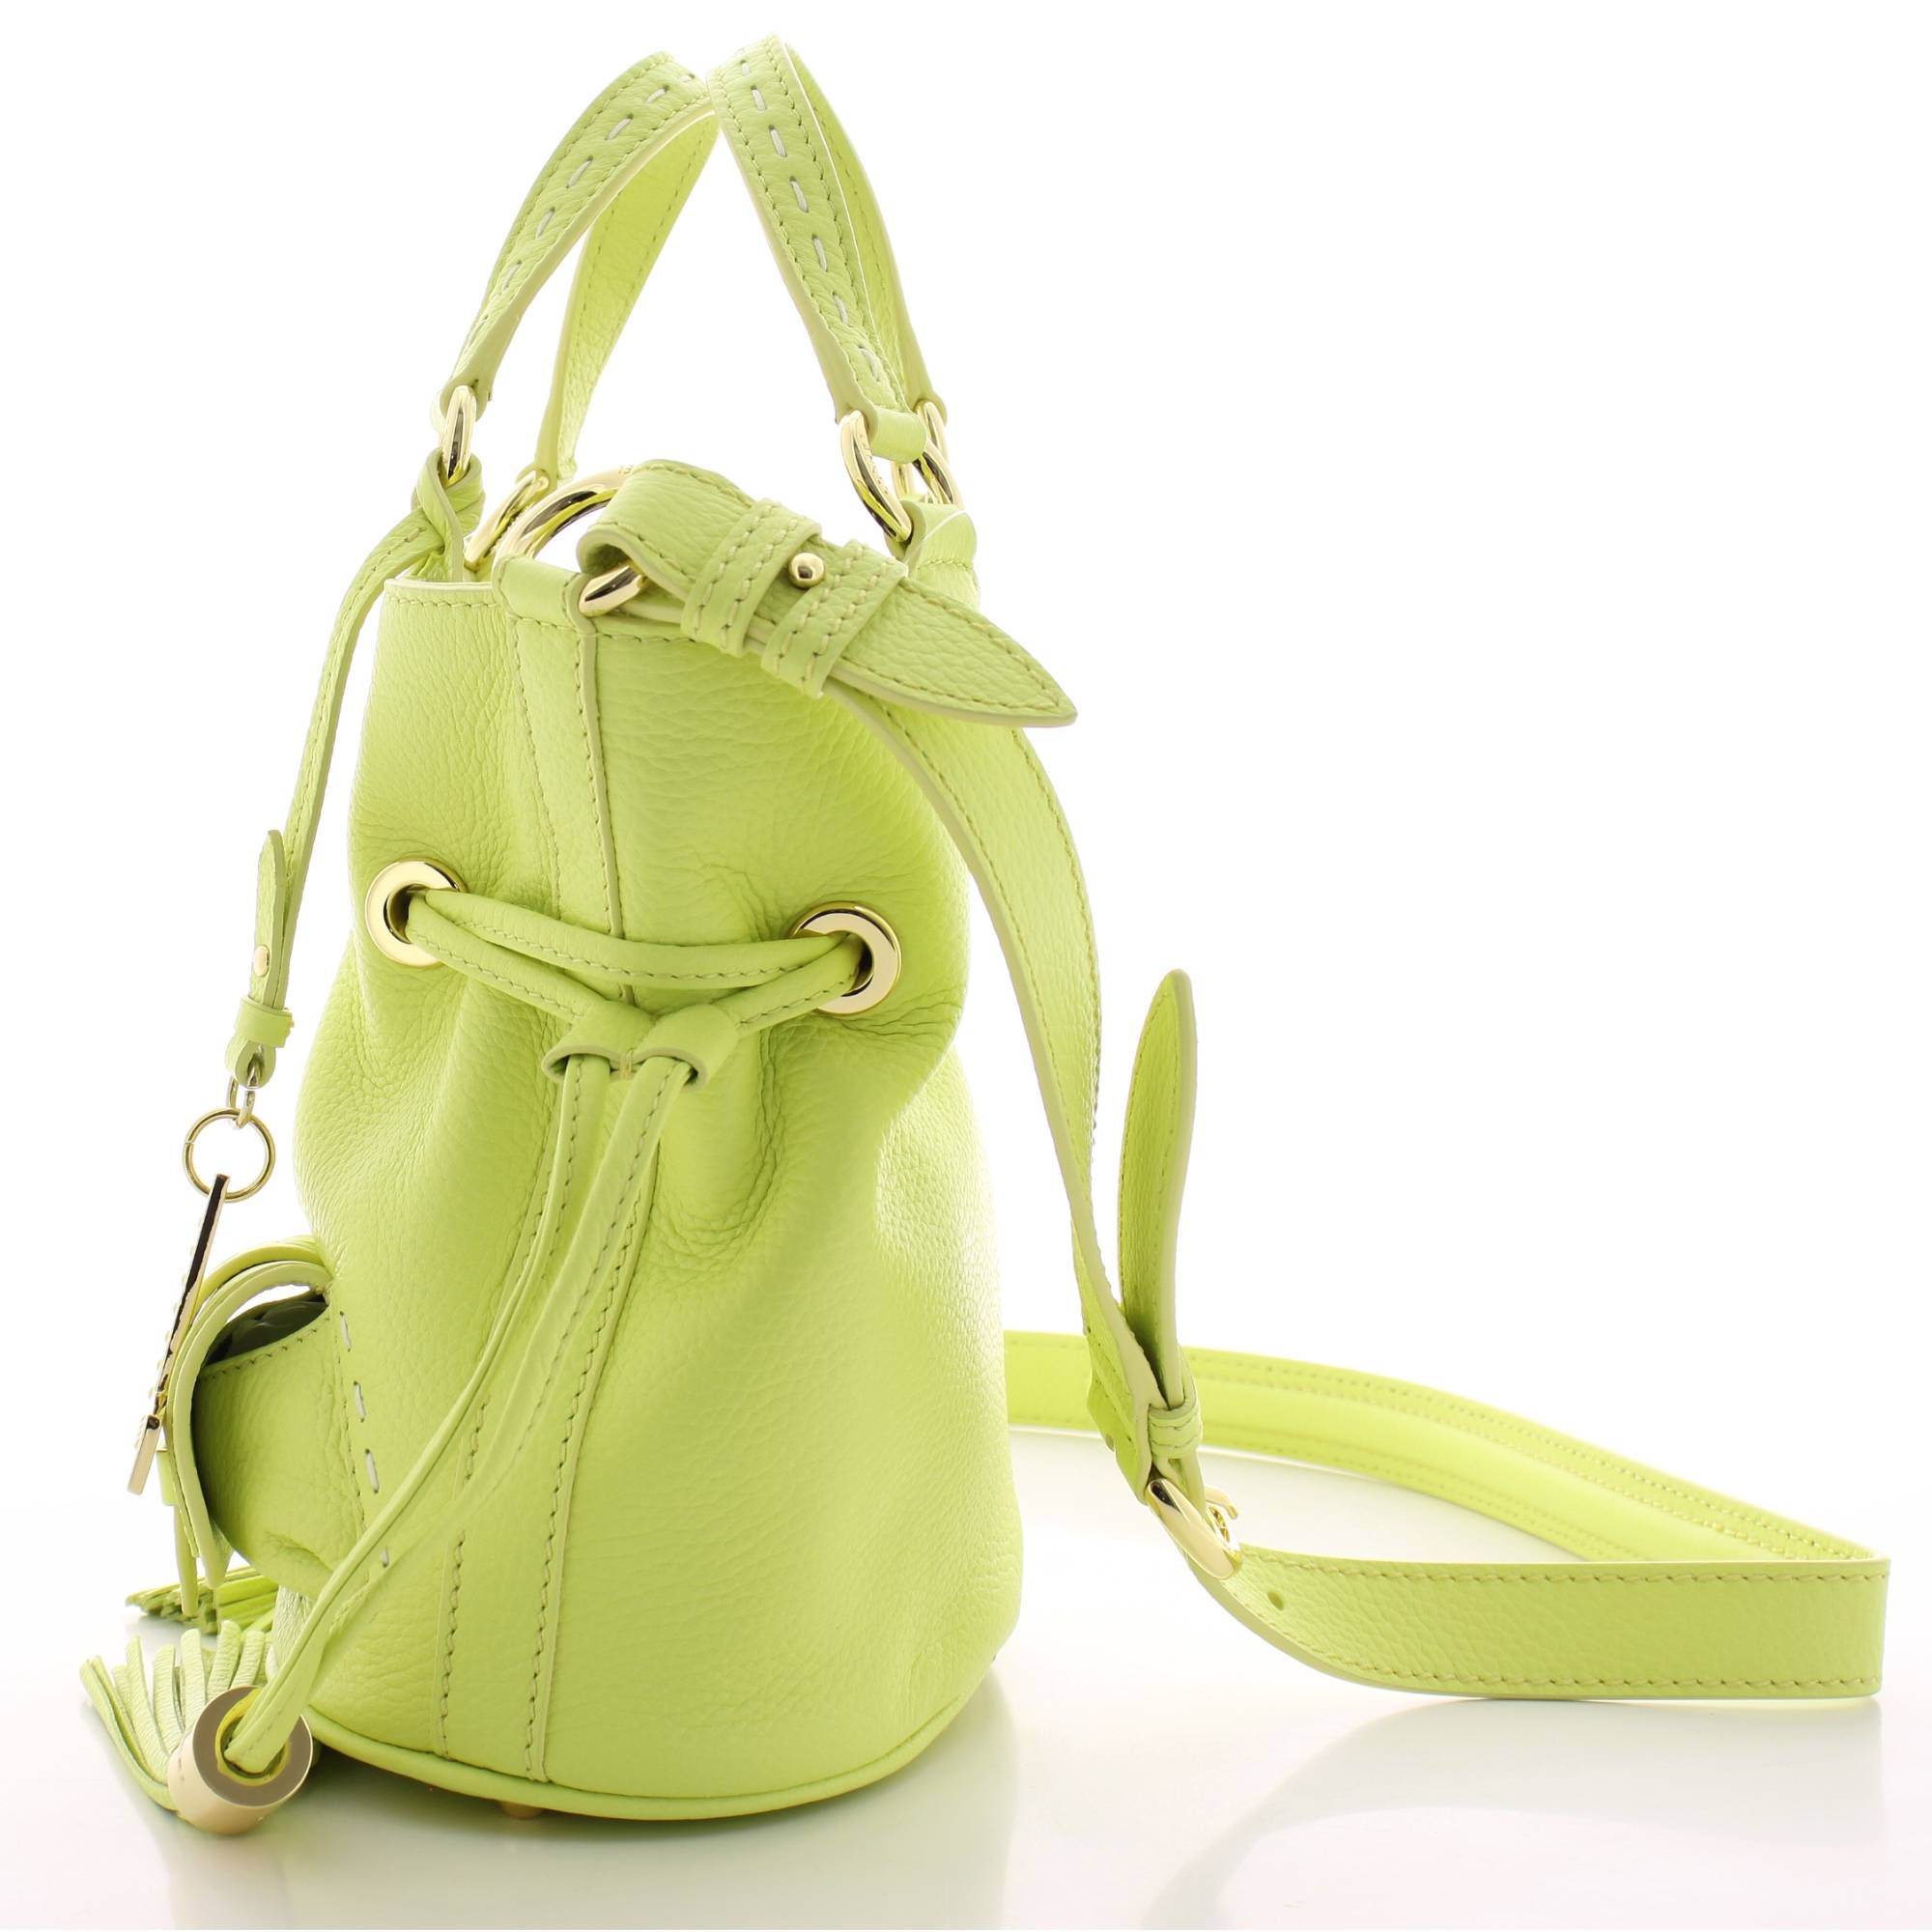 Petit sac seau cuir Lancel Premier Flirt A10109 LI couleur Lime, vue de côté